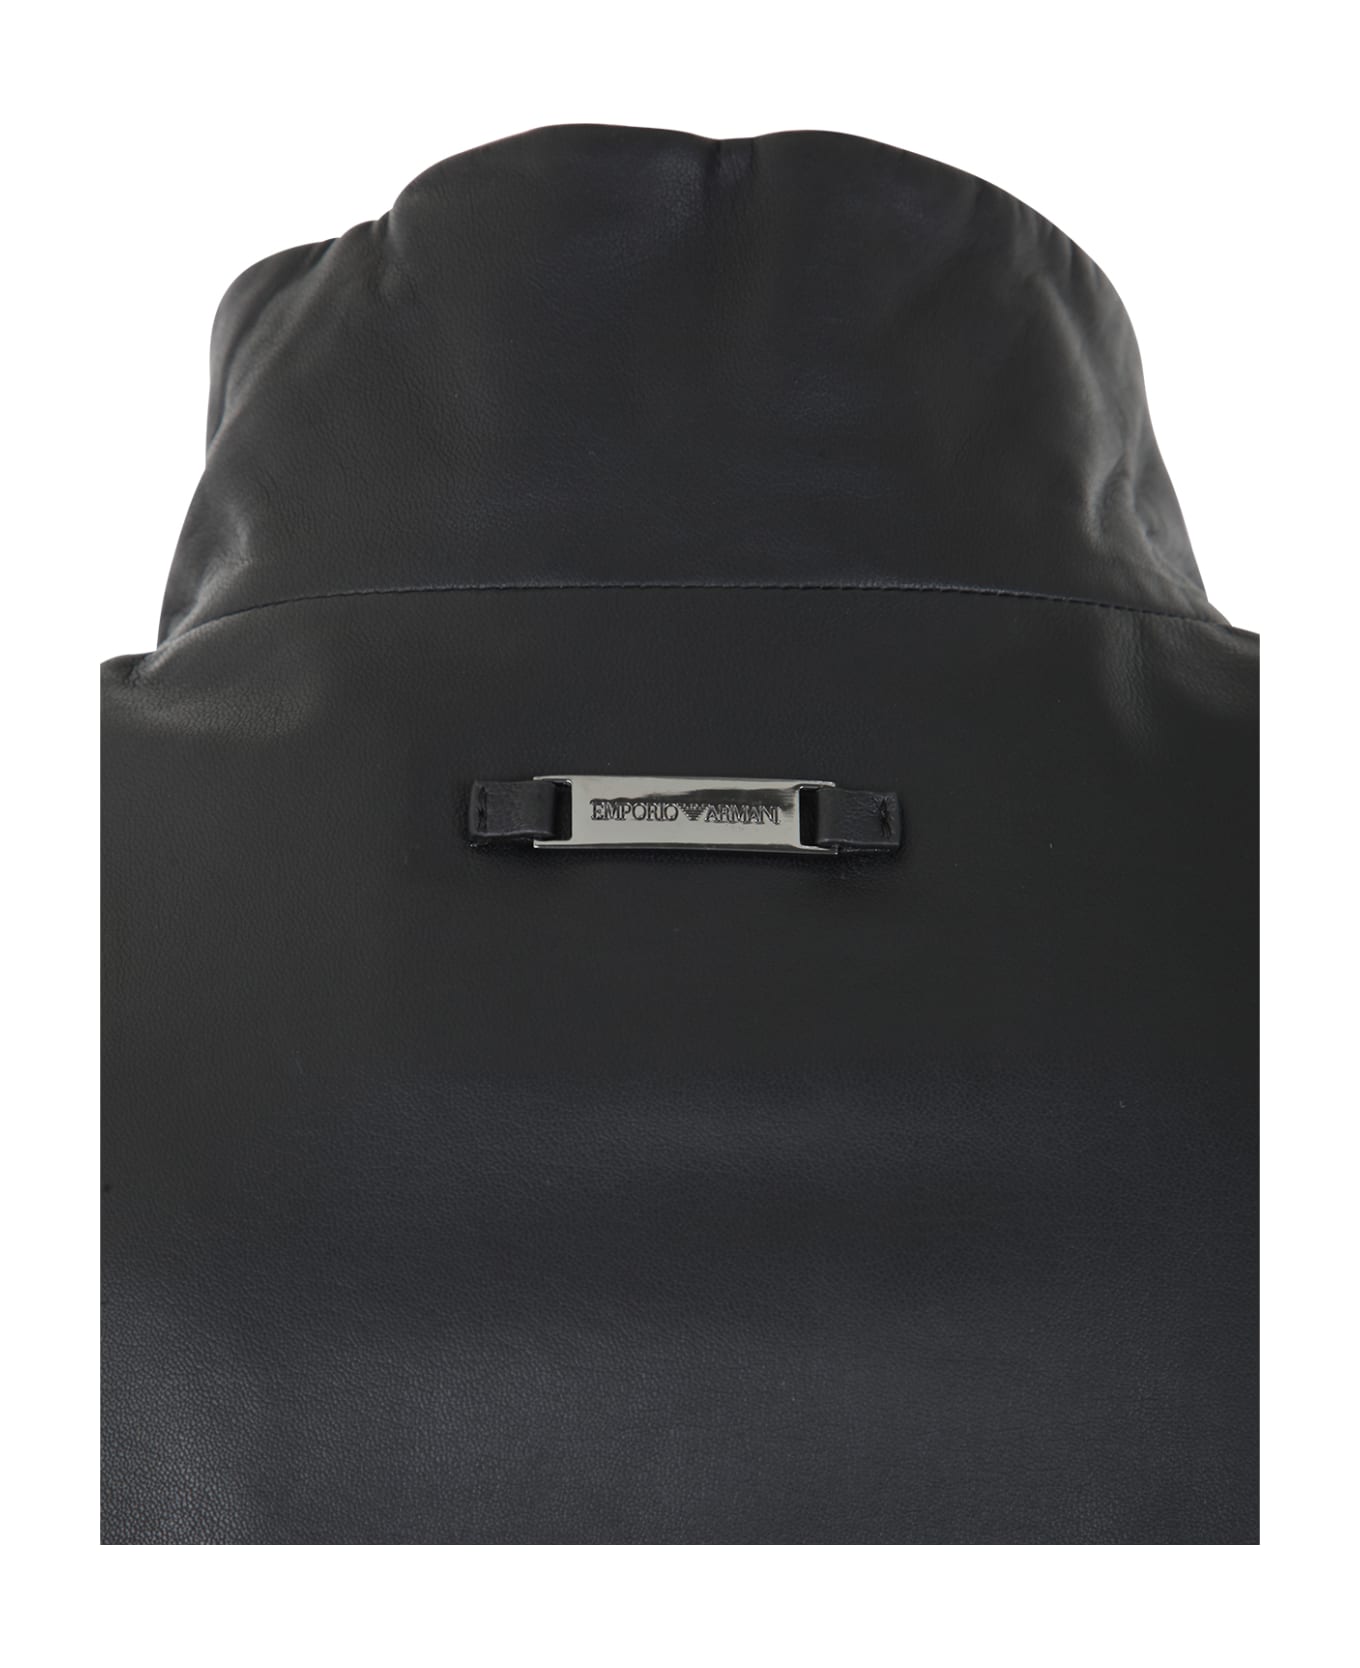 Emporio Armani Leather Jacket - Black レザージャケット